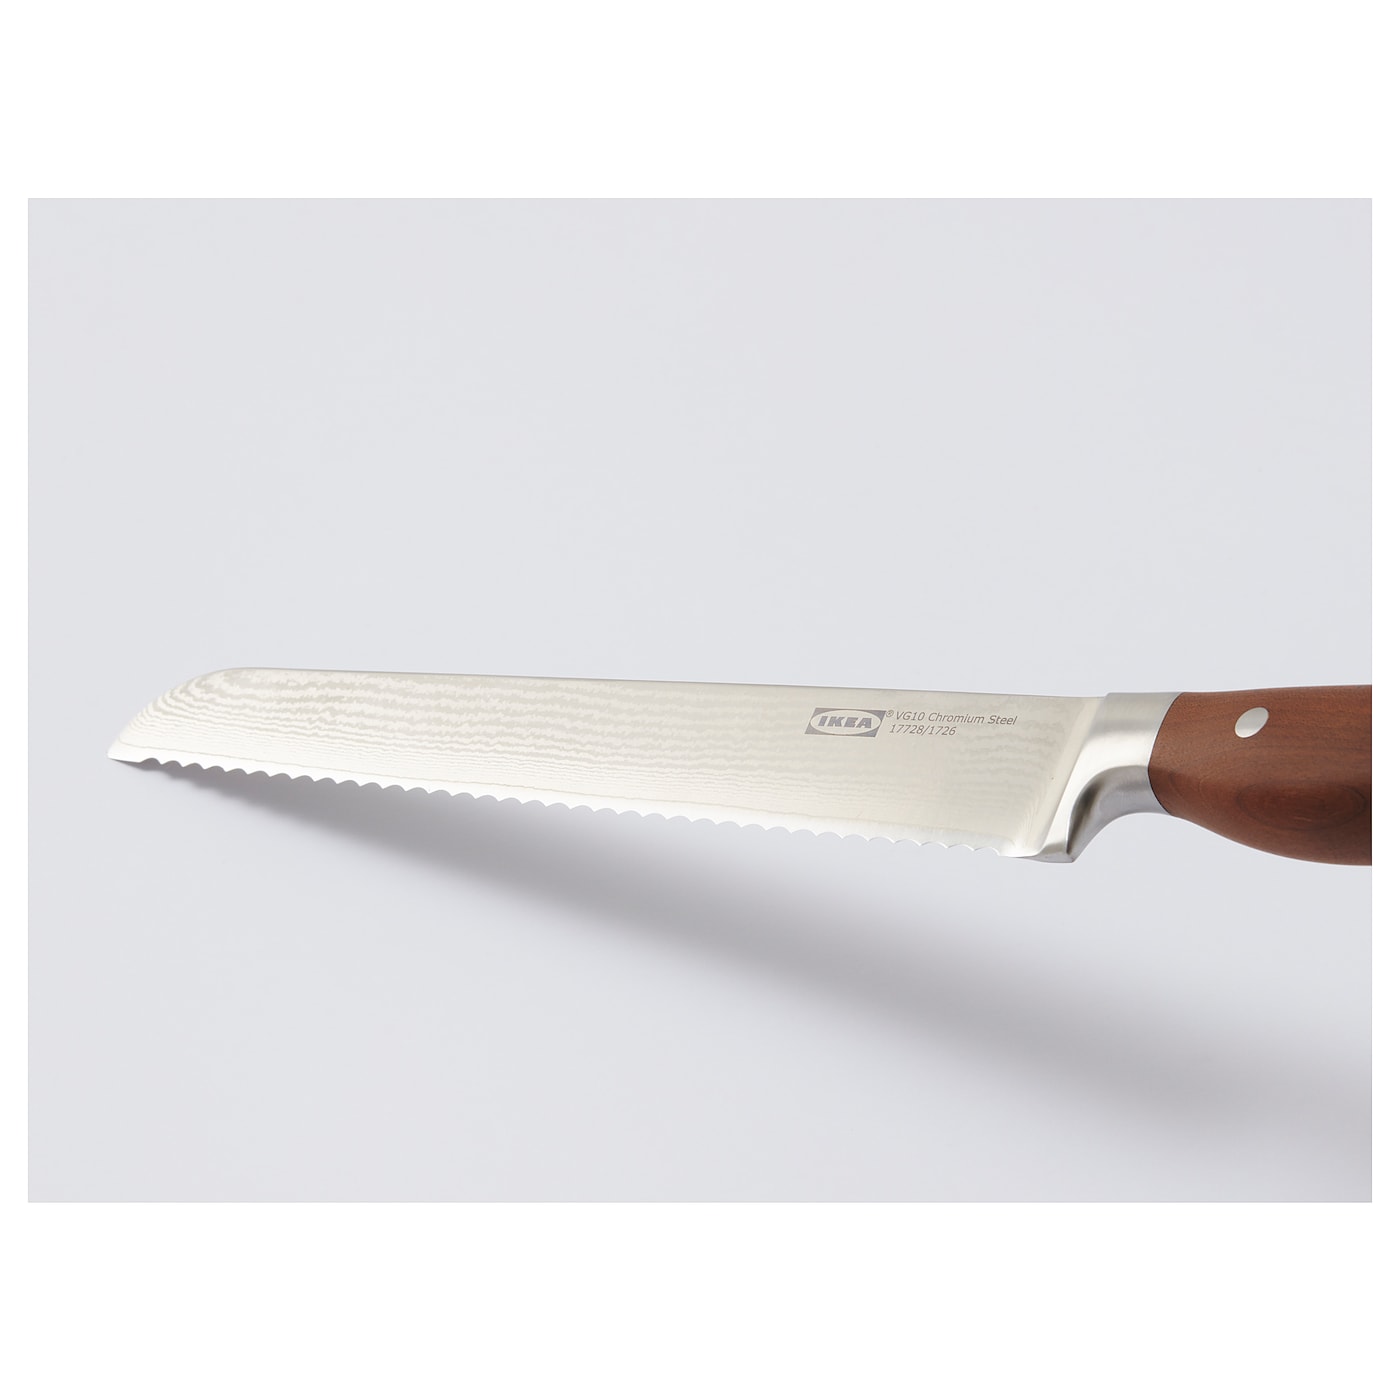 Ikea briljera нож для хлеба